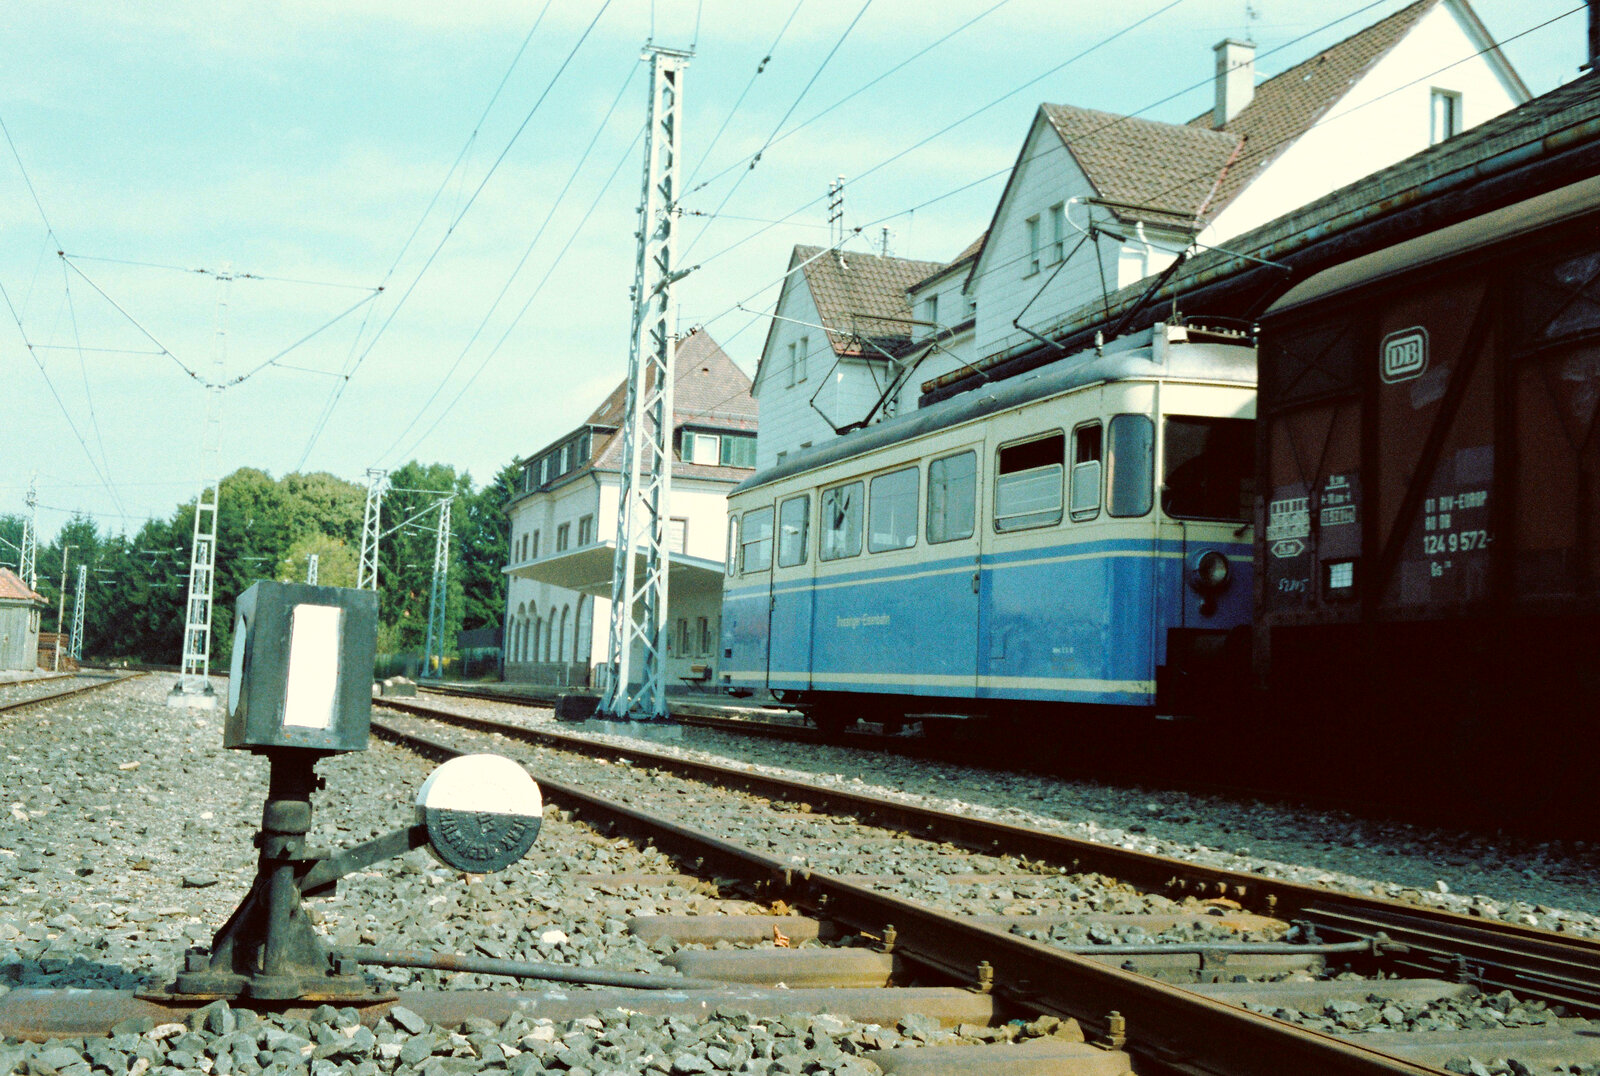 Esslinger T5 (von 1956) vor dem Bahnhof Trossingen-Stadt.
Datum: 01.09.1983